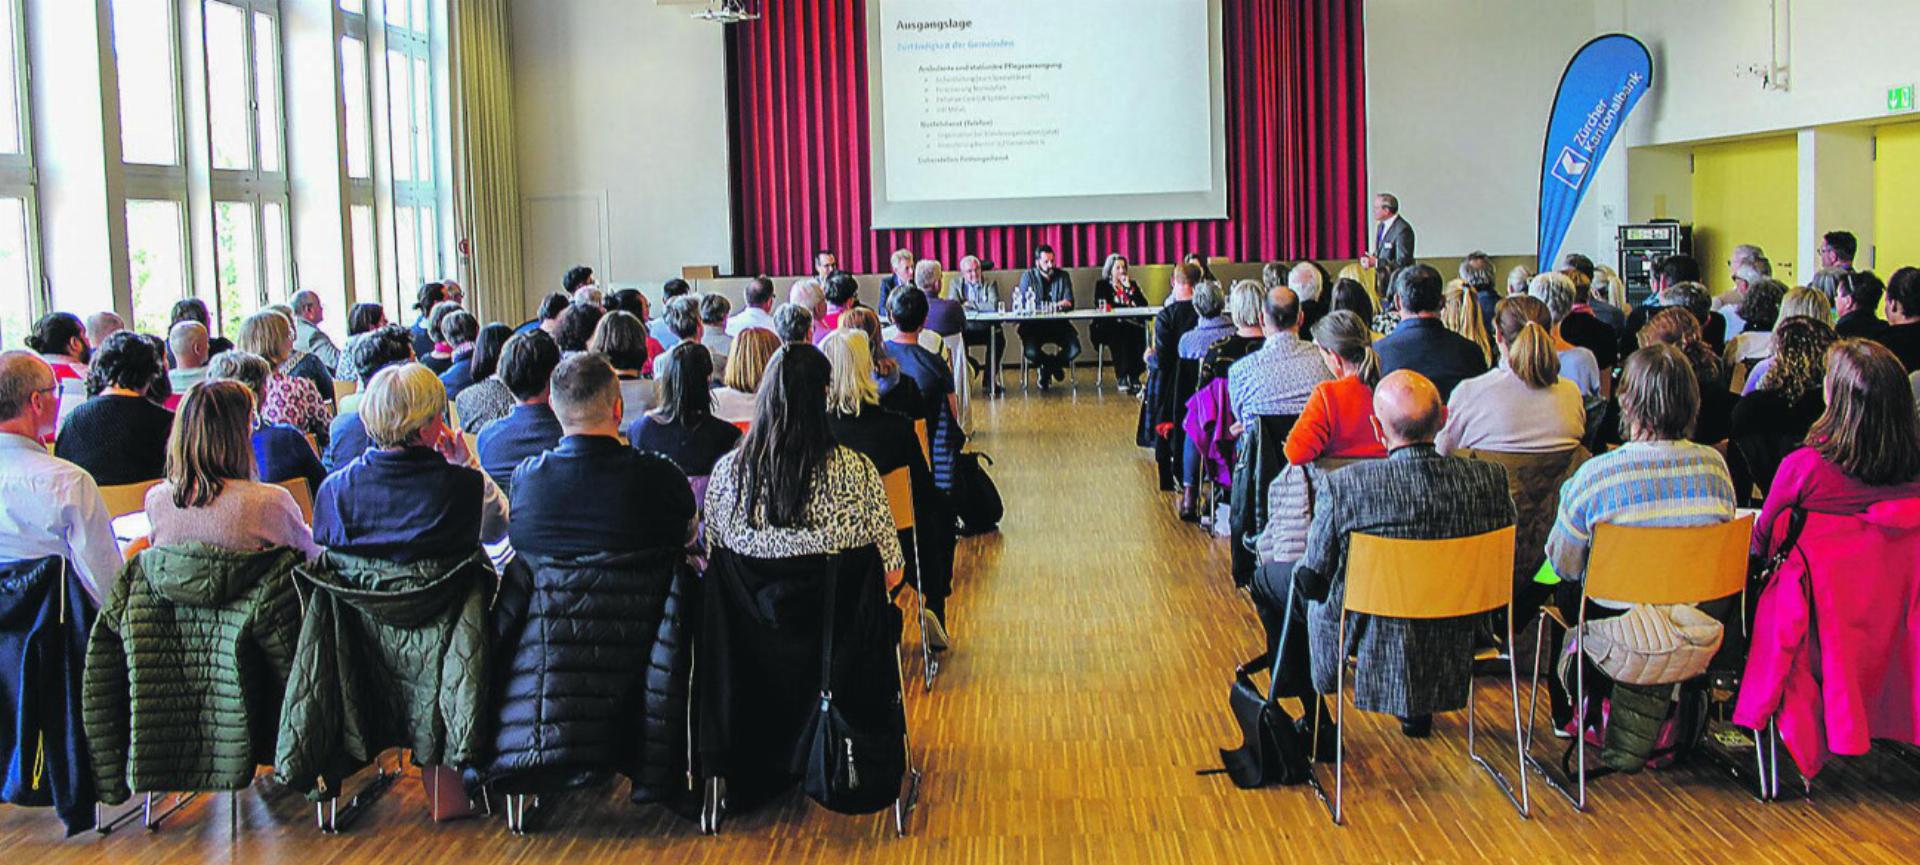 Bei der Mitgliederversammlung des Spitex Verbands Kanton Zürich in Bülach kam es zu Änderungen im Vorstand. Bild: Spitex Verband Kanton Zürich/Martin Merk